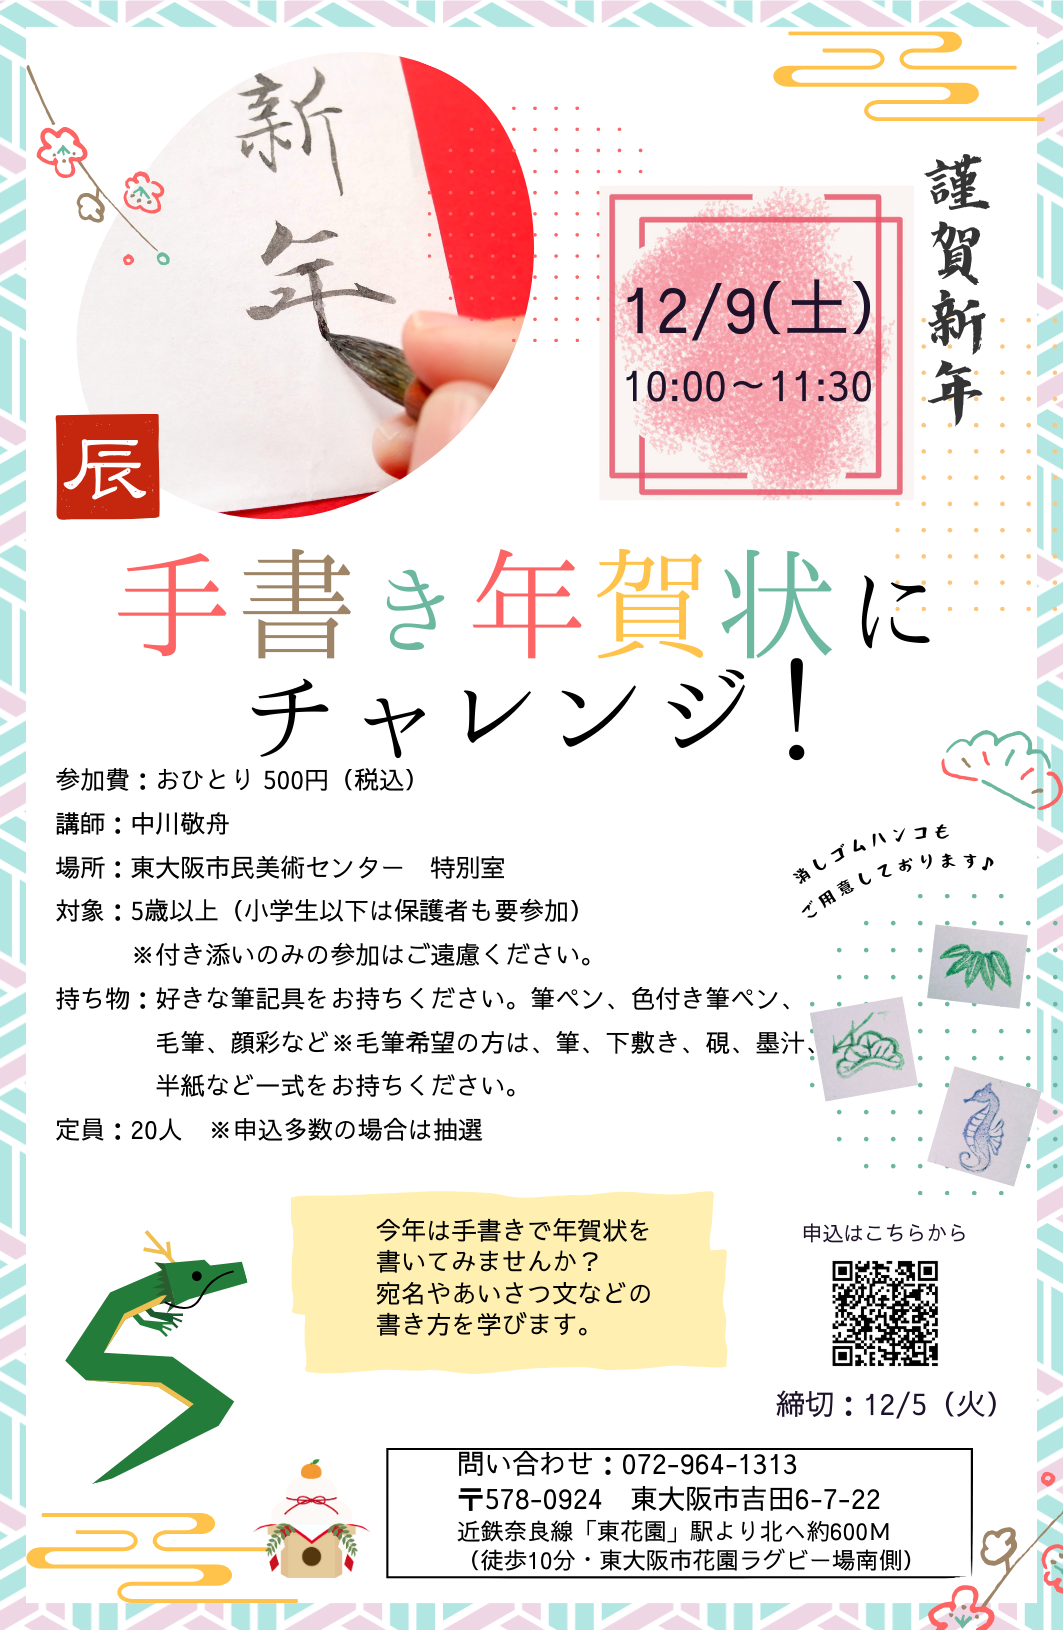 東大阪市民美術センター | 絵画や書道などの展覧会・特別展 ...